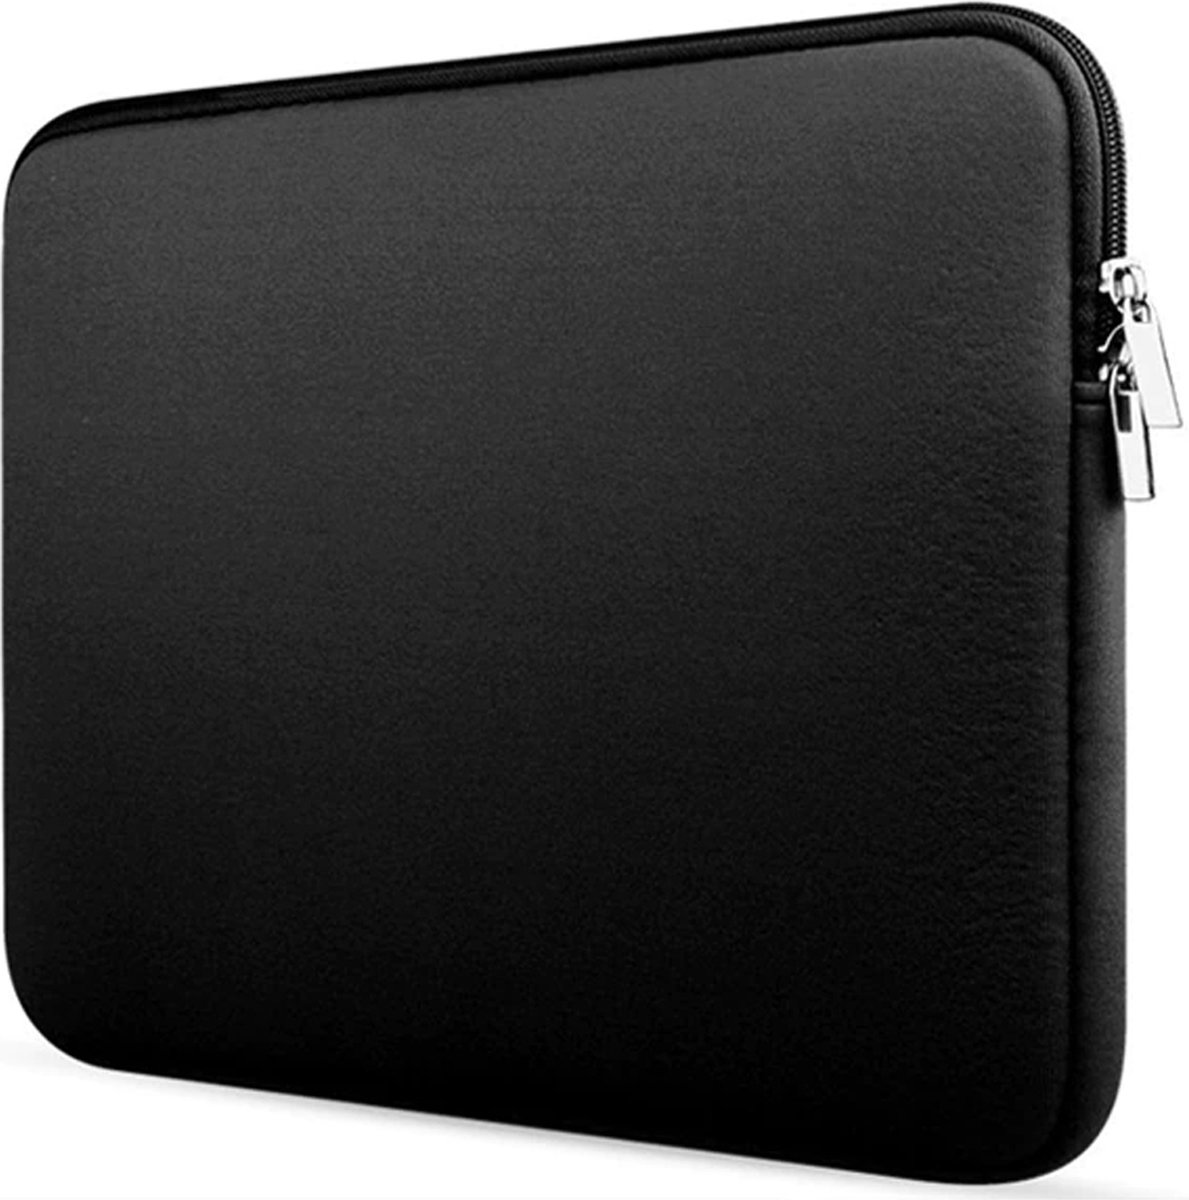 Laptophoes - Laptop sleeve 13.3 inch - Laptoptas geschikt voor Macbook, Laptop en Chromebook - Zwart - Case2go